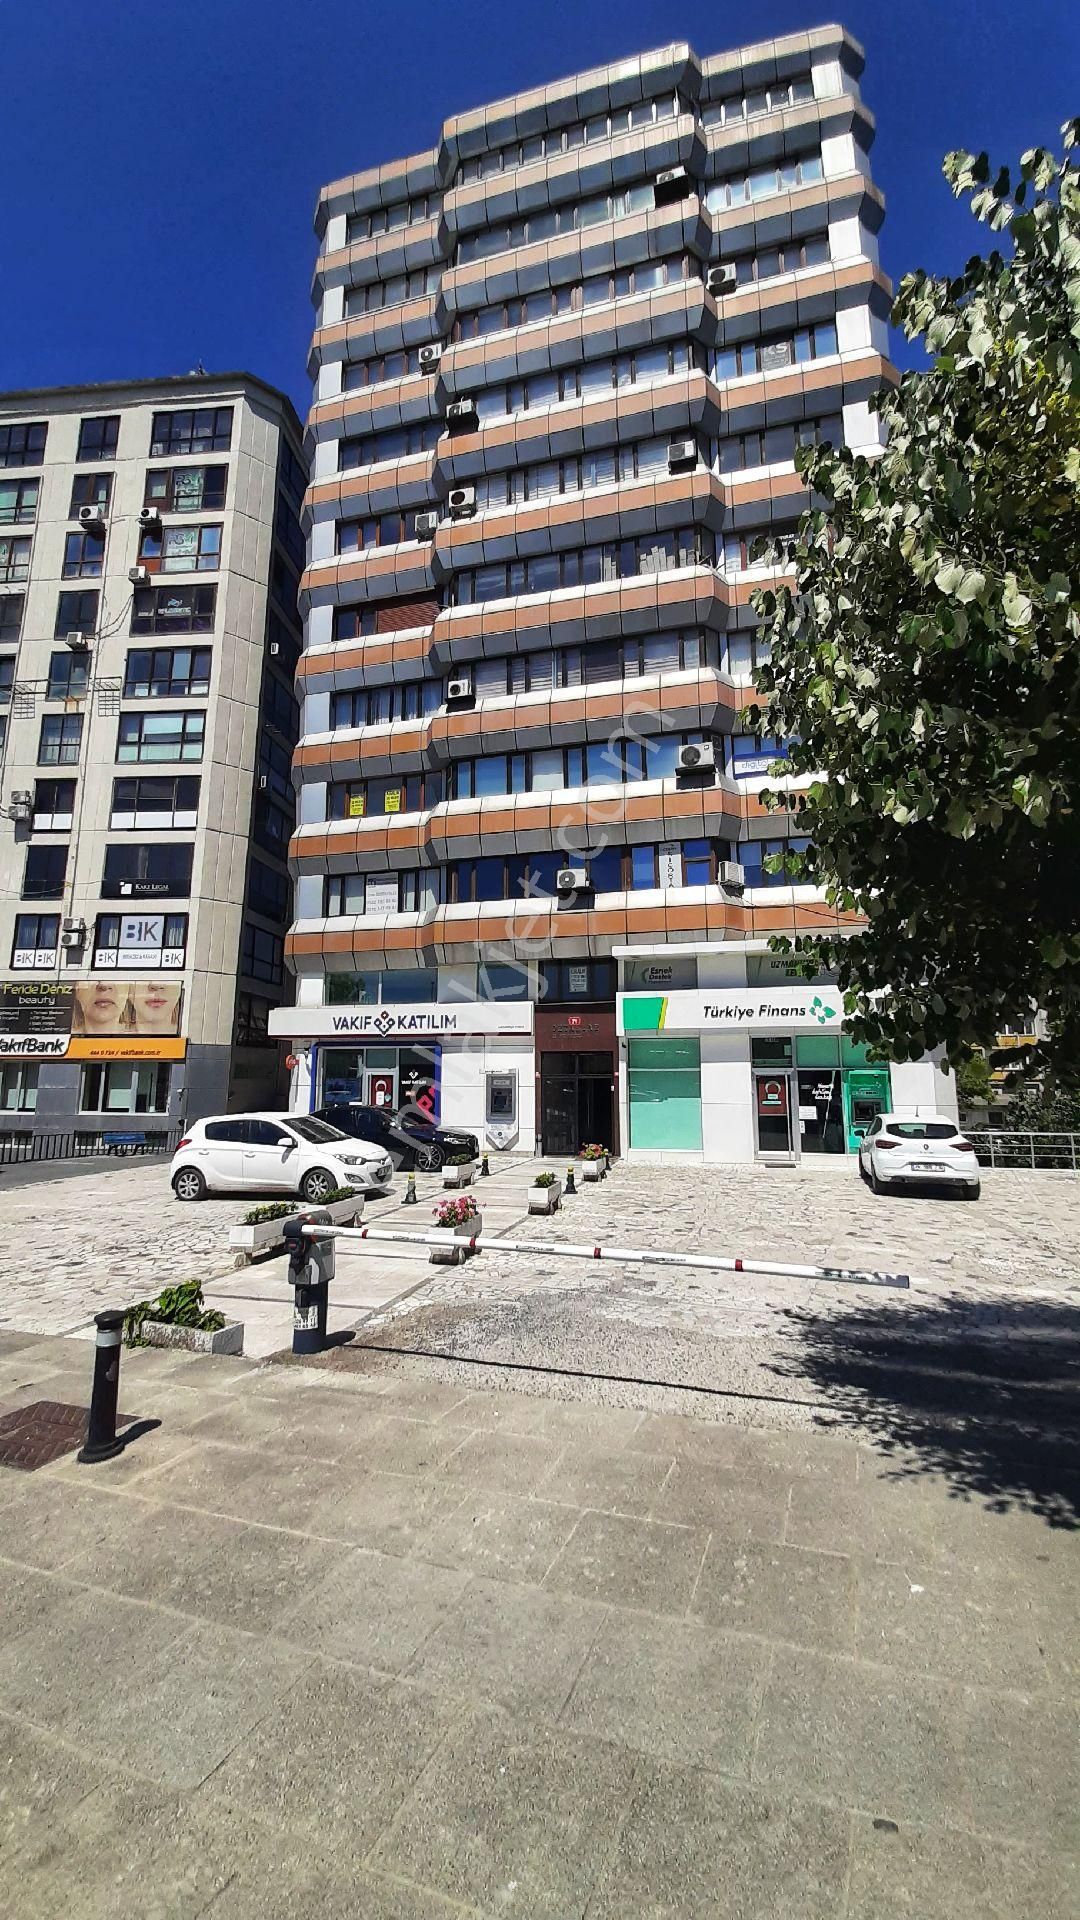 Kadıköy Hasanpaşa Kiralık Büro Kadıköy Evlendirme Dairesi Karşısı İçi Yapılı Masrafsız Ofis